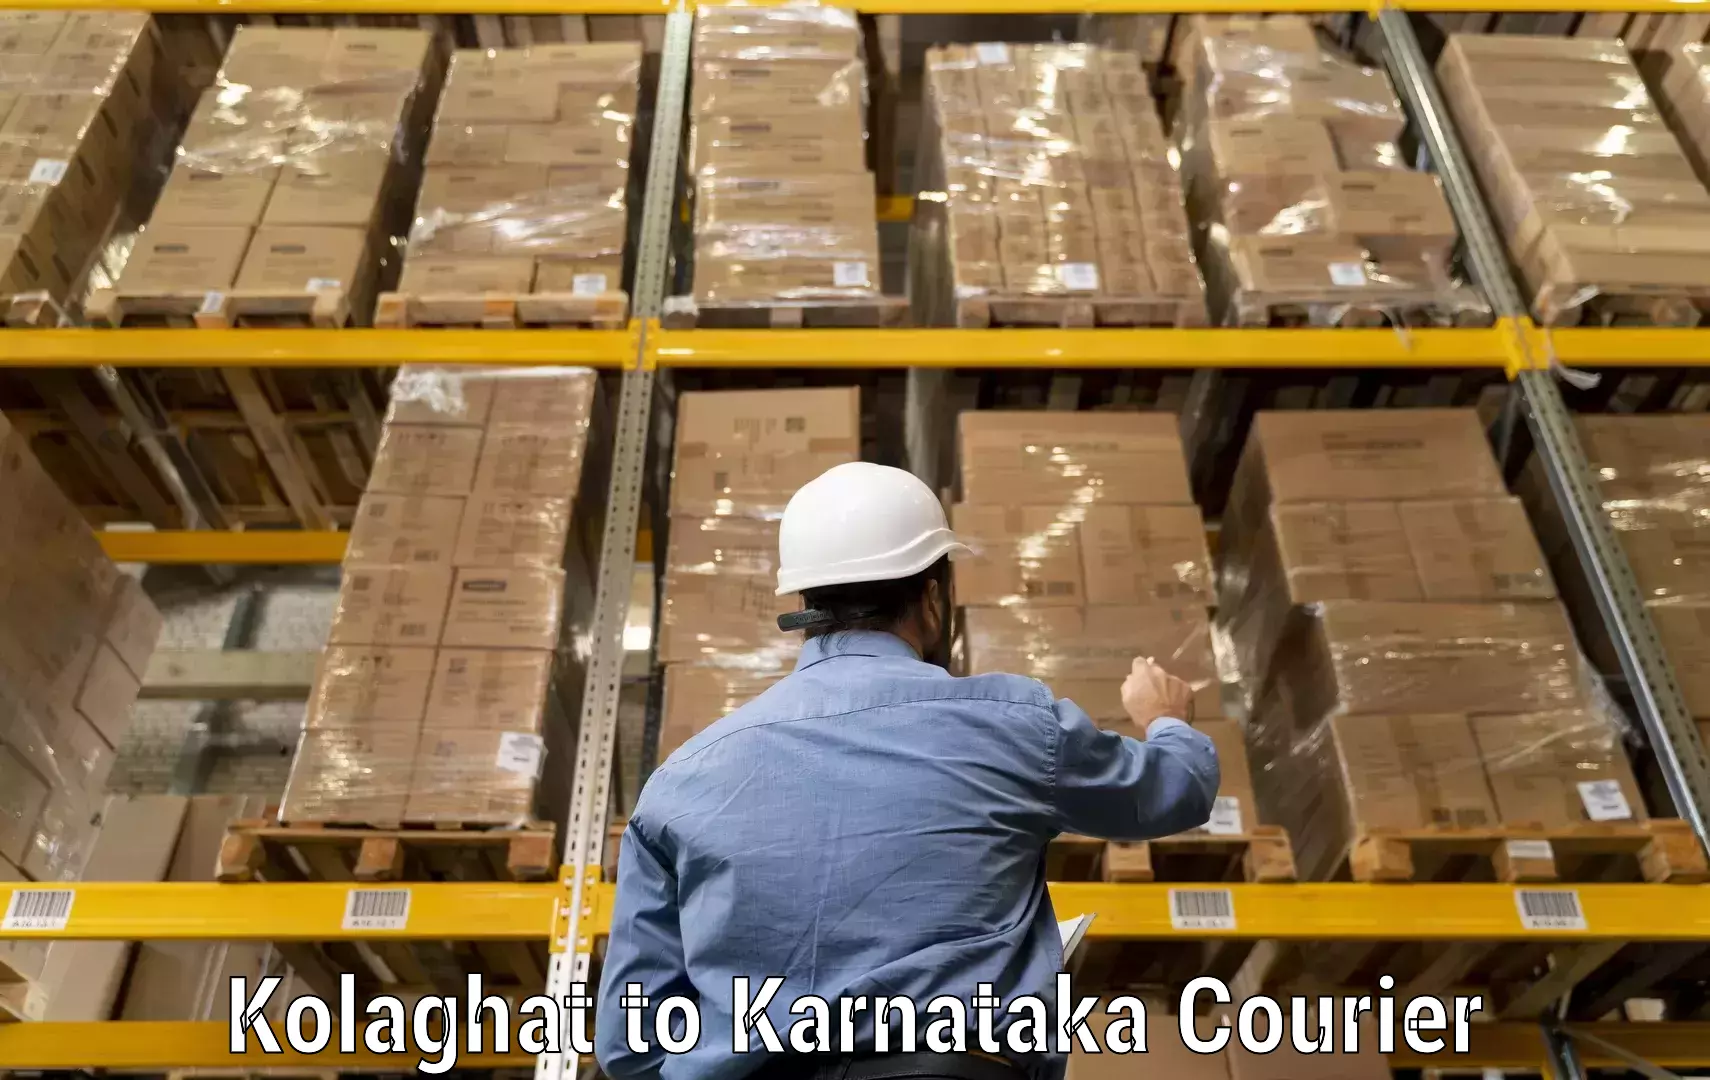 Custom courier packaging Kolaghat to Gundlupete